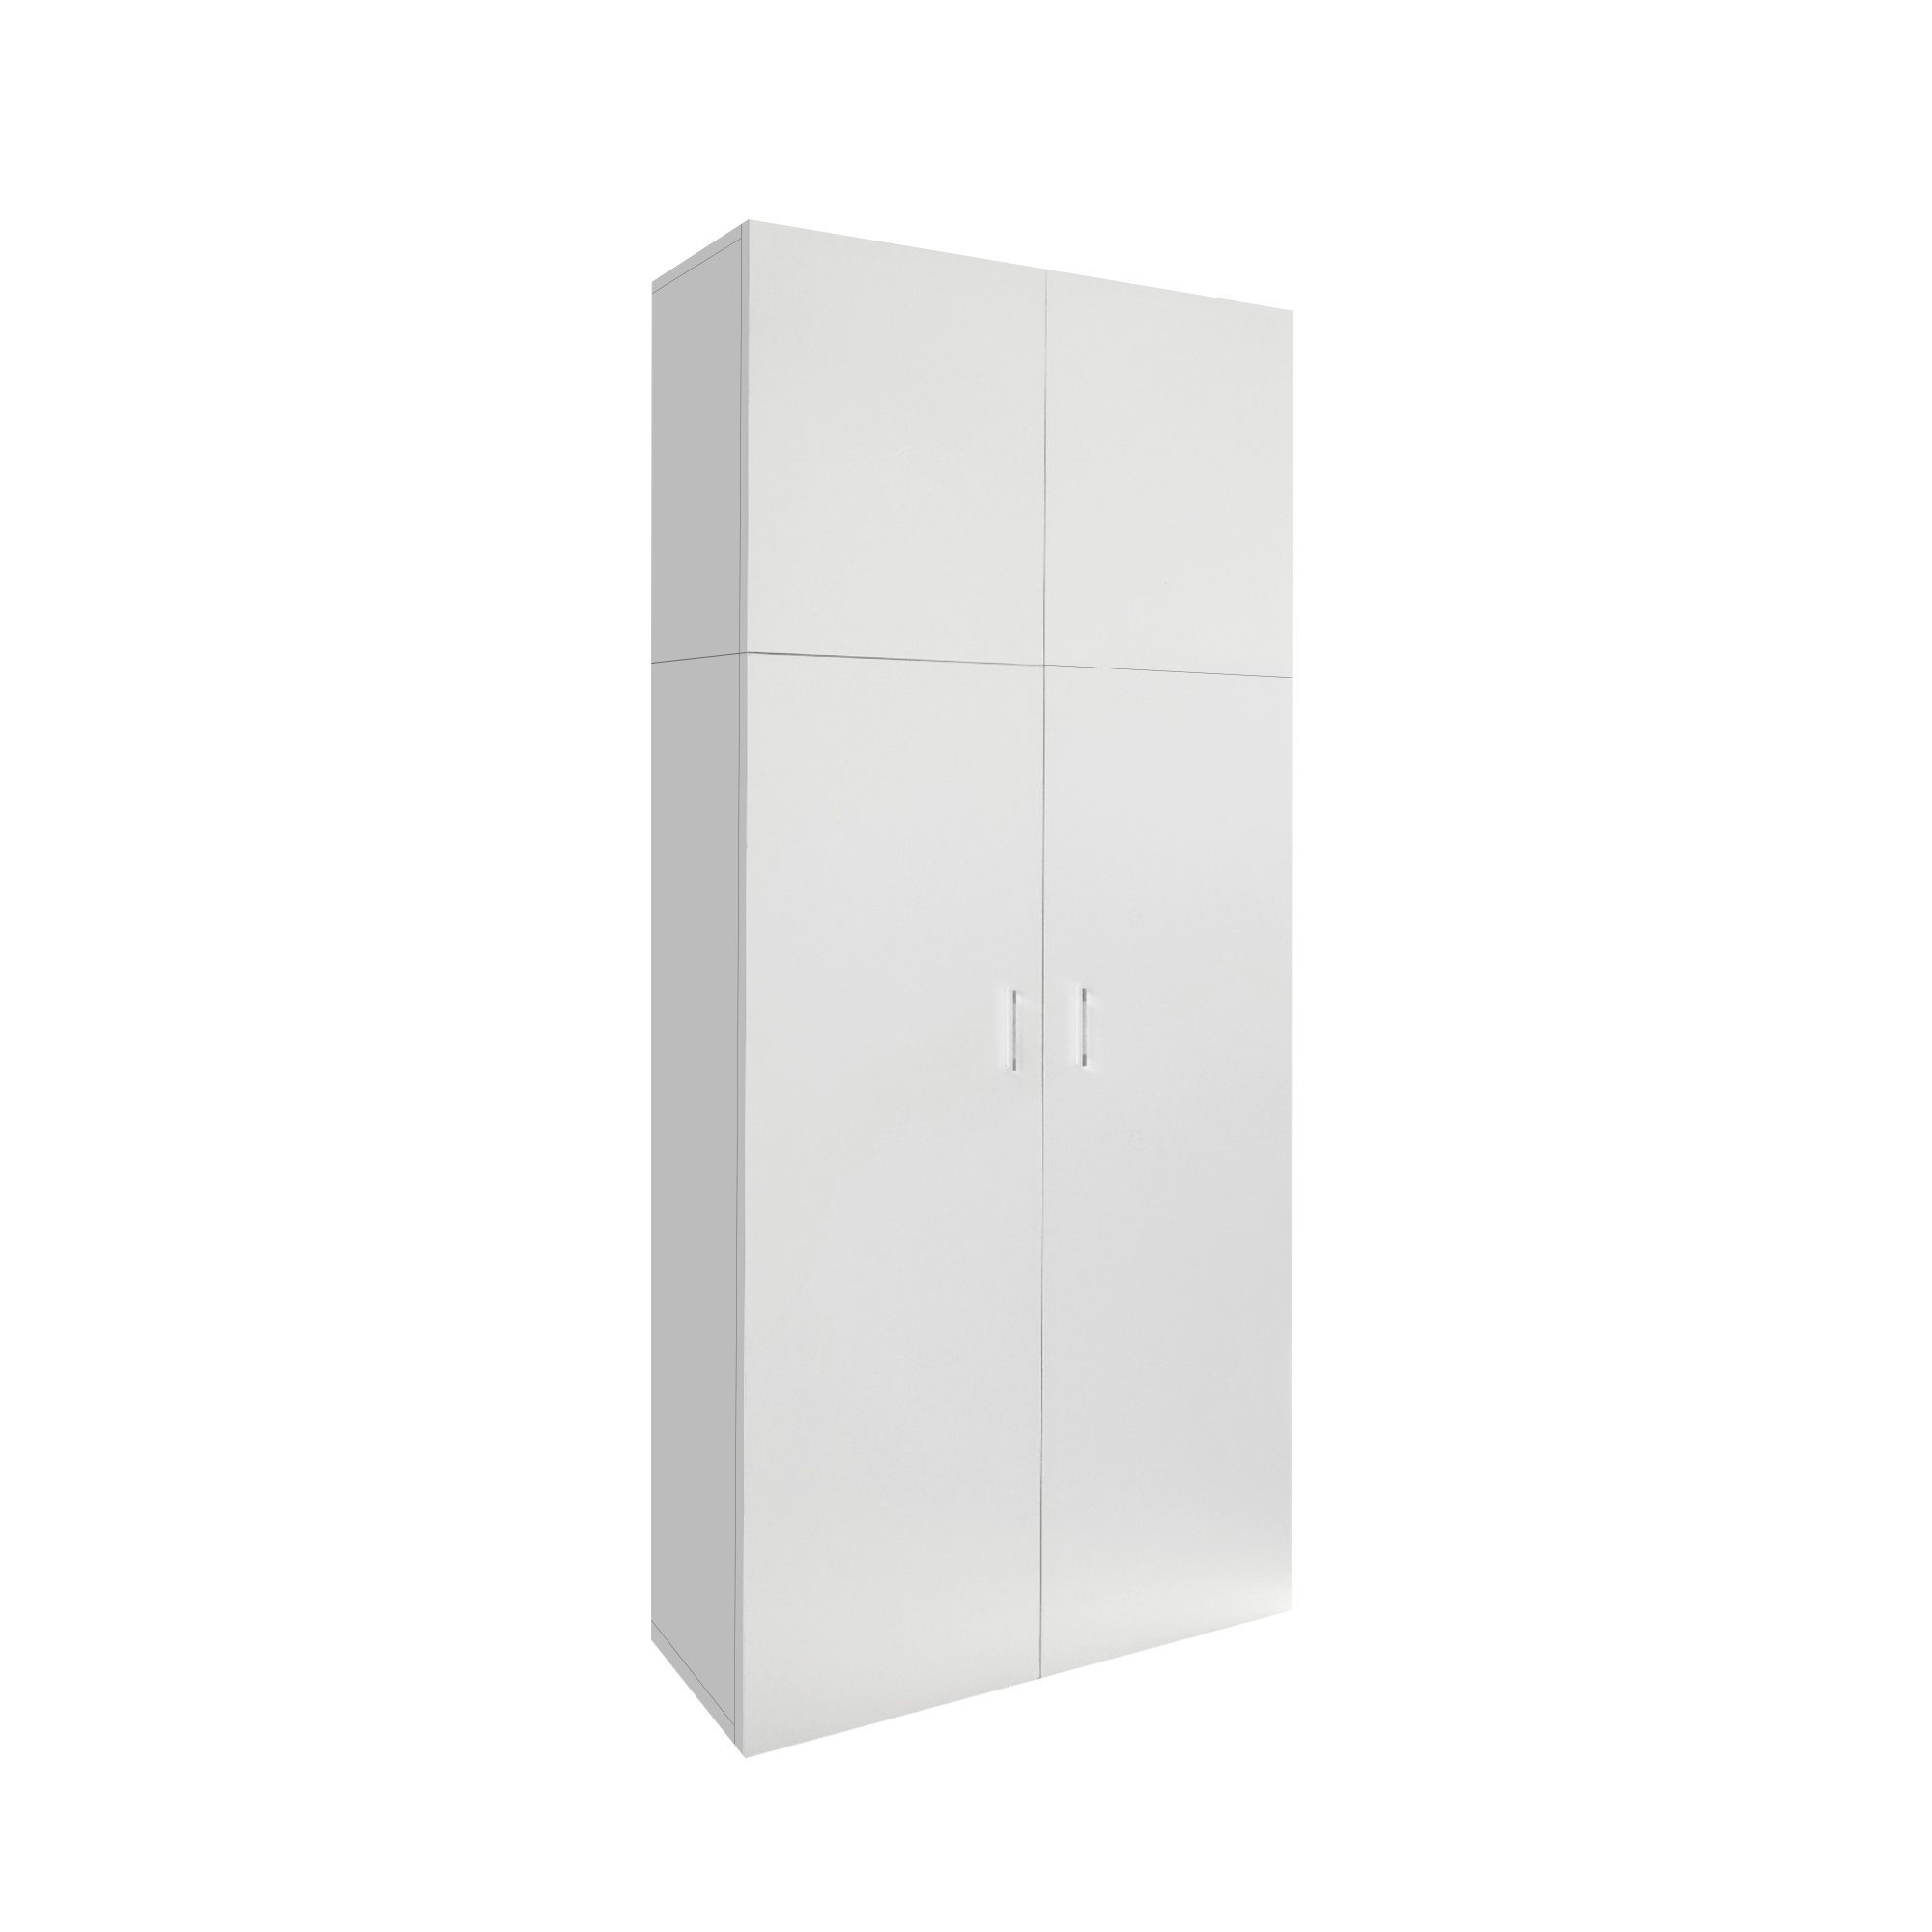 ML-DESIGN Mehrzweckschrank Mehrzweckschrank Büroschrank Haushaltsschrank Weiß 2 Türen 8 Fächer Holz 80x182,4x37 modern